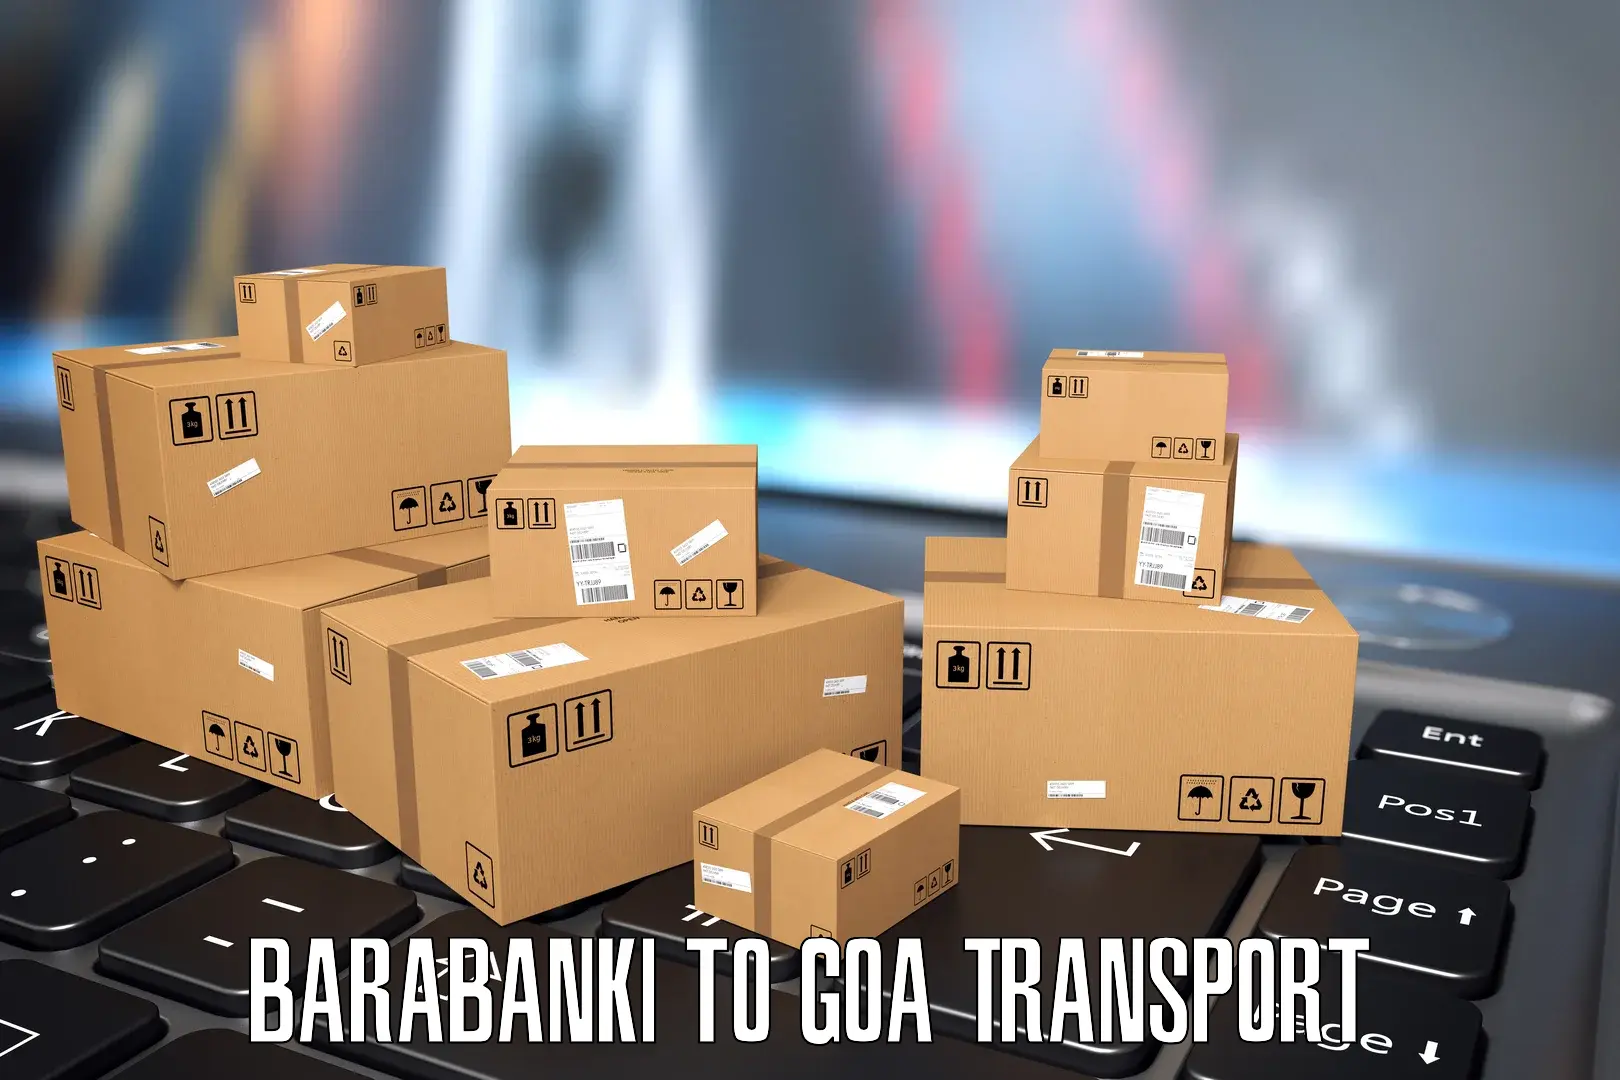 Nearest transport service Barabanki to Ponda